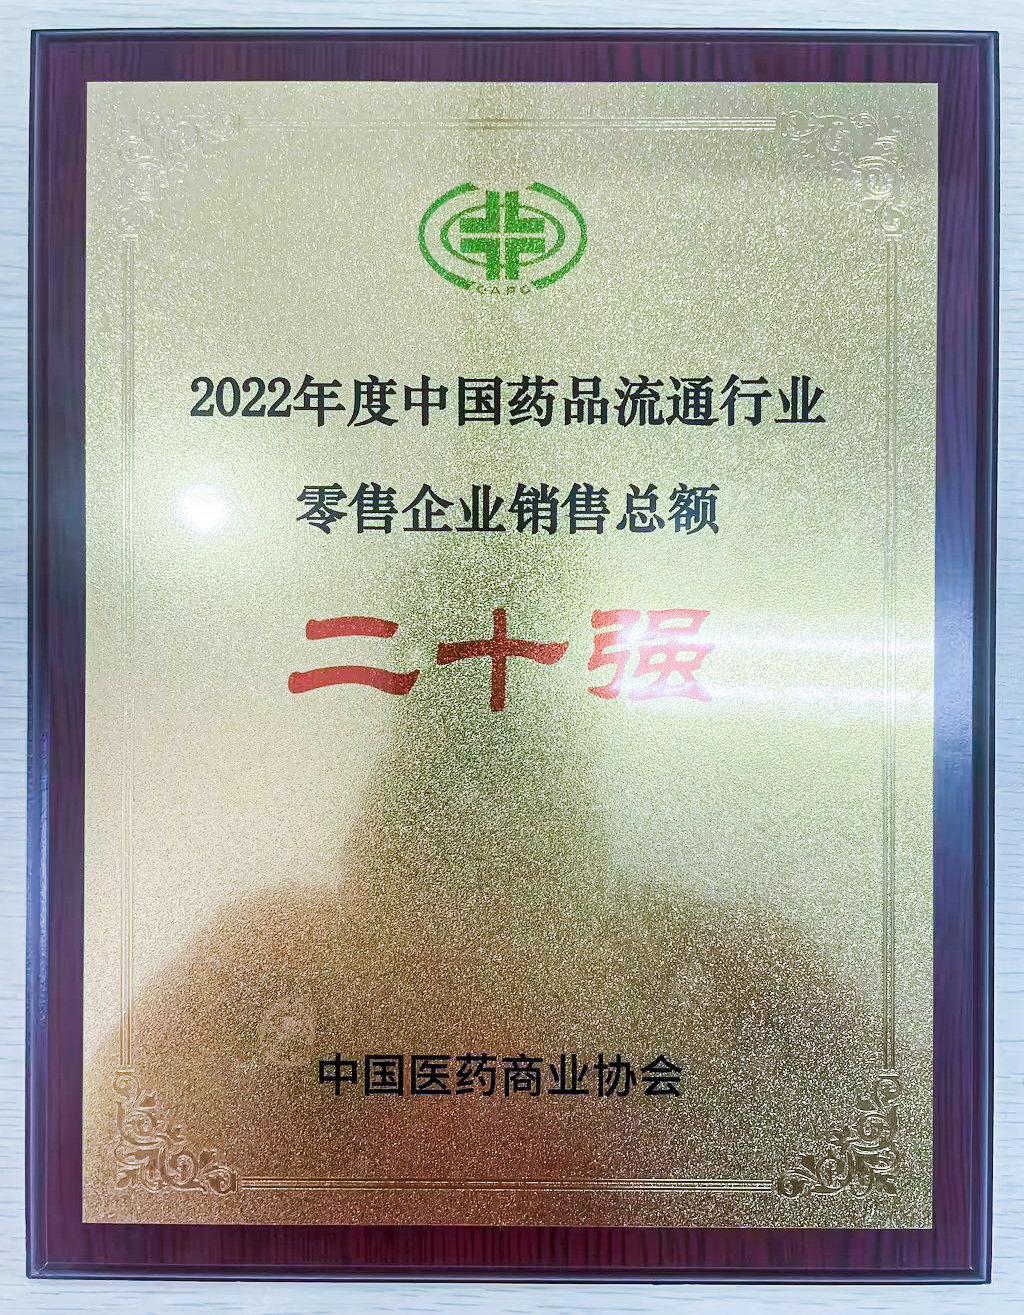 “2022年度中国药品流通行业零售企业销售总额榜”第十位